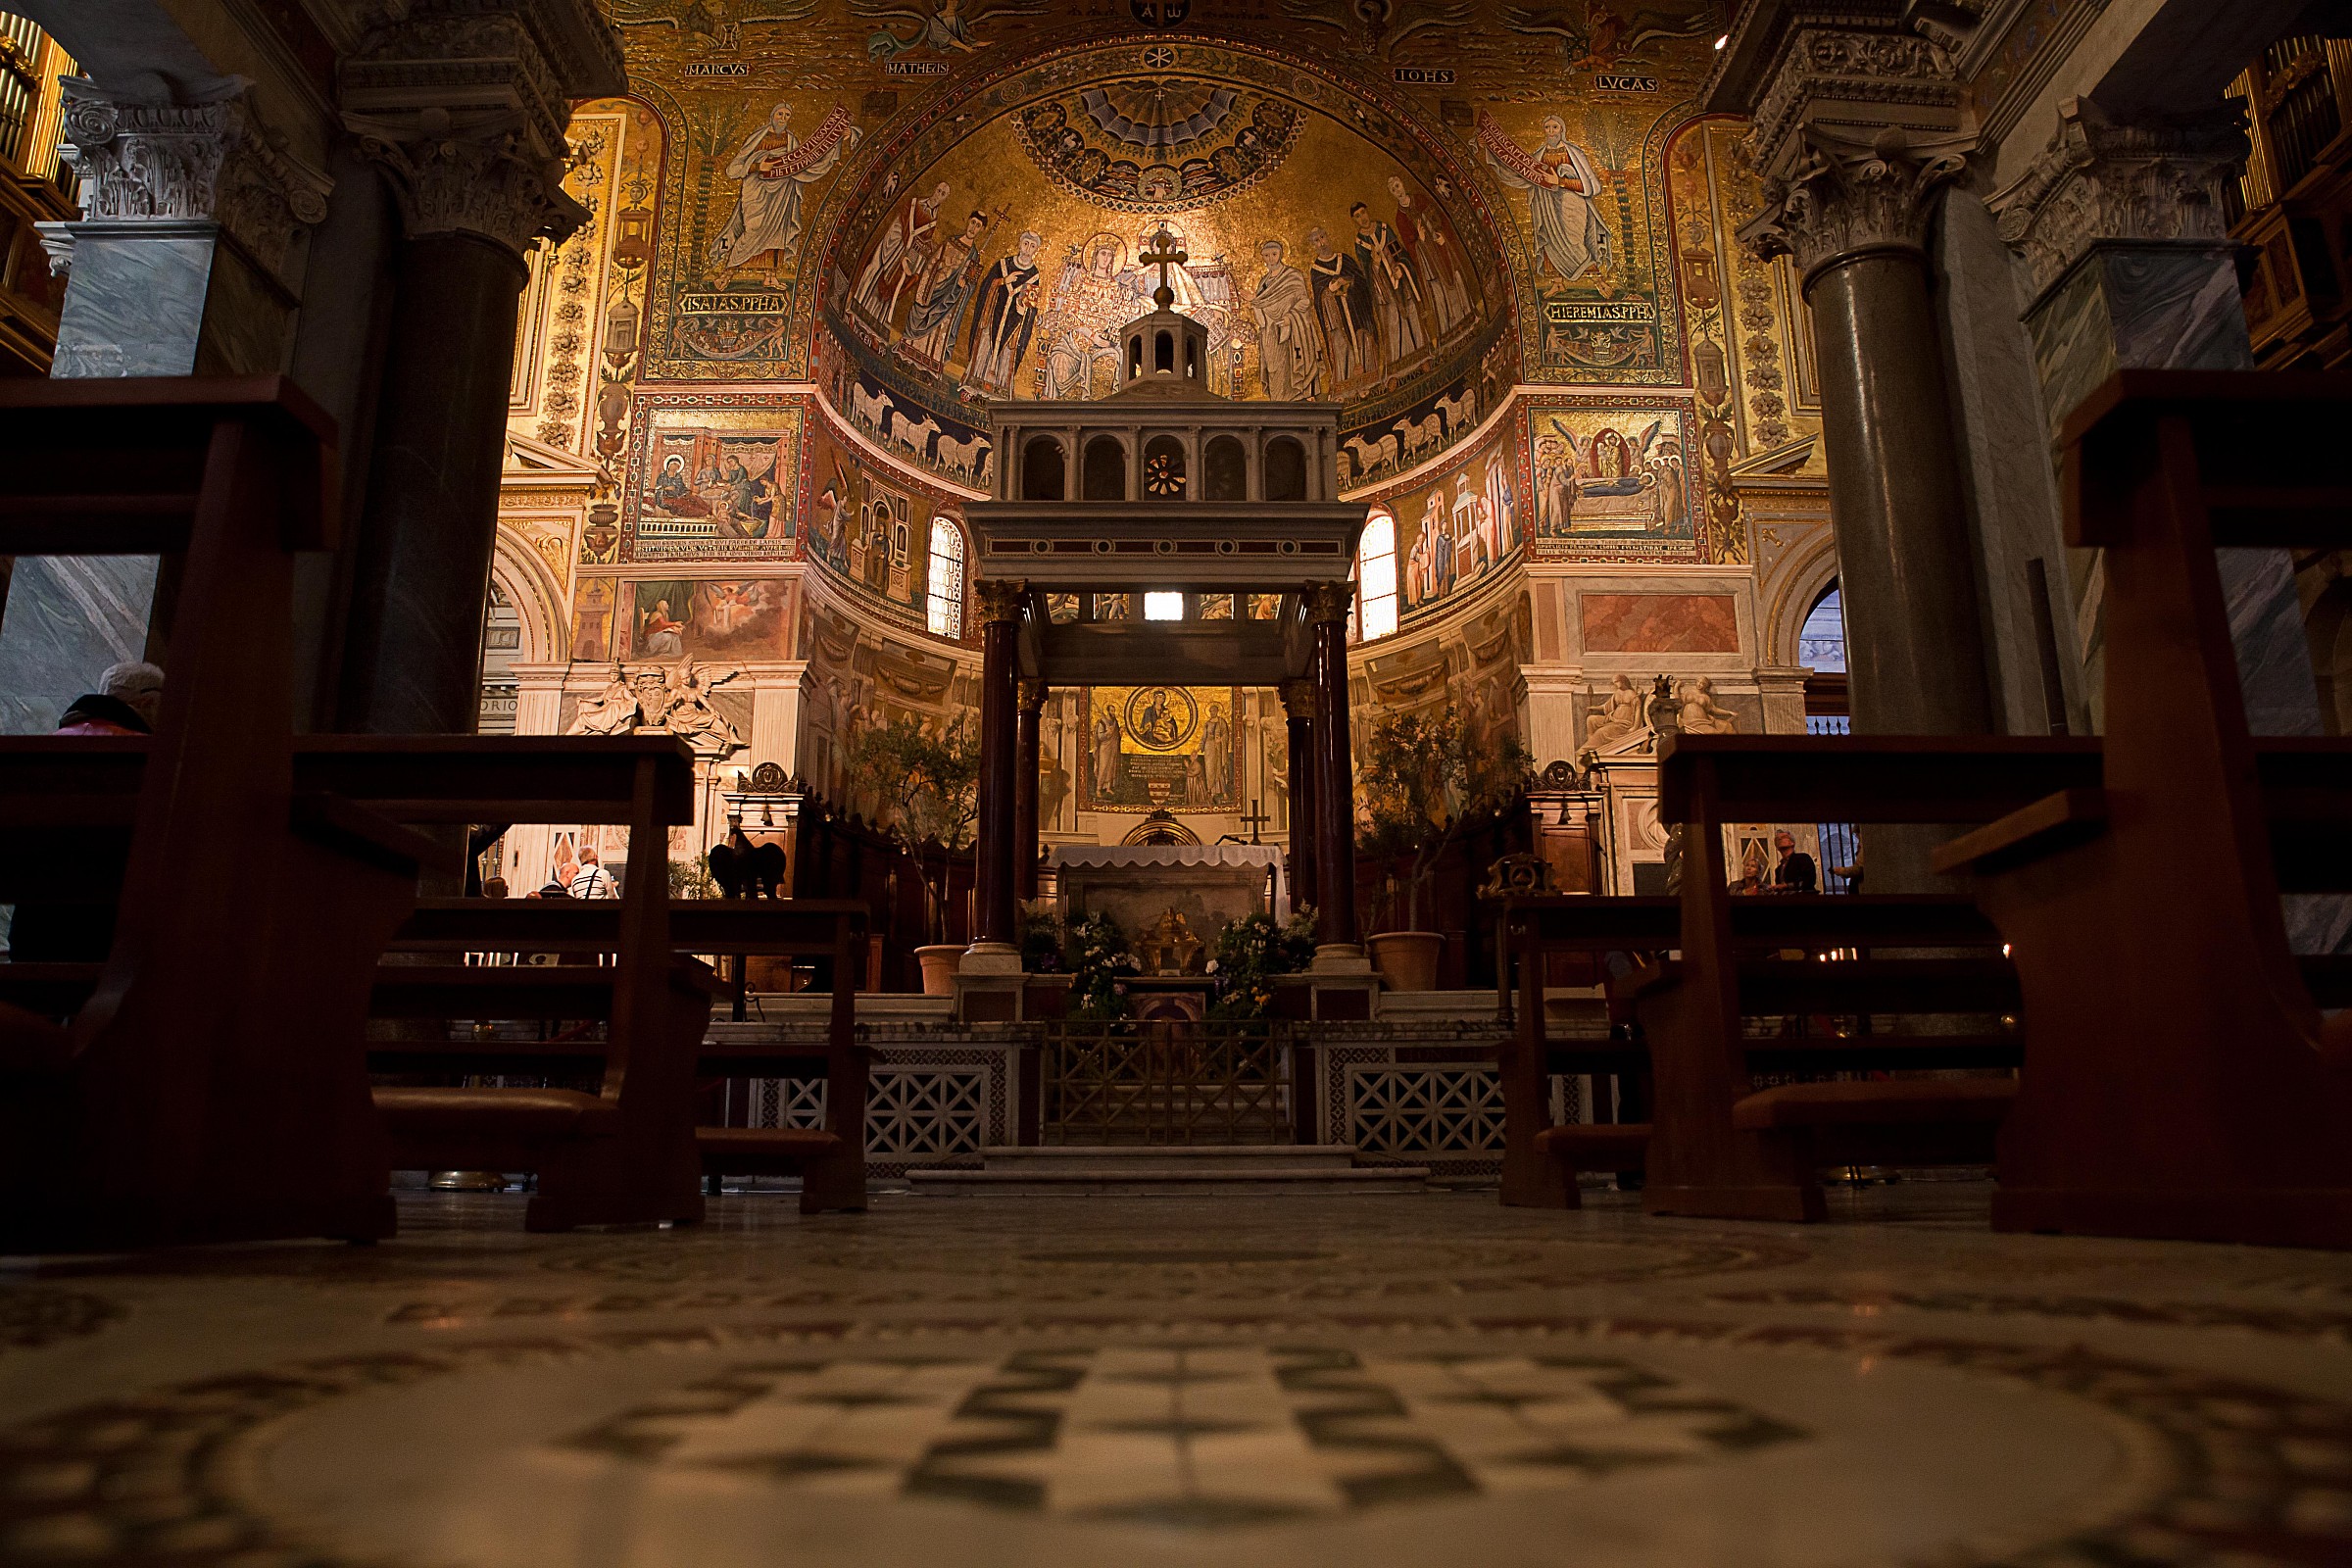 "Santa Maria in Trastevere", Rome...